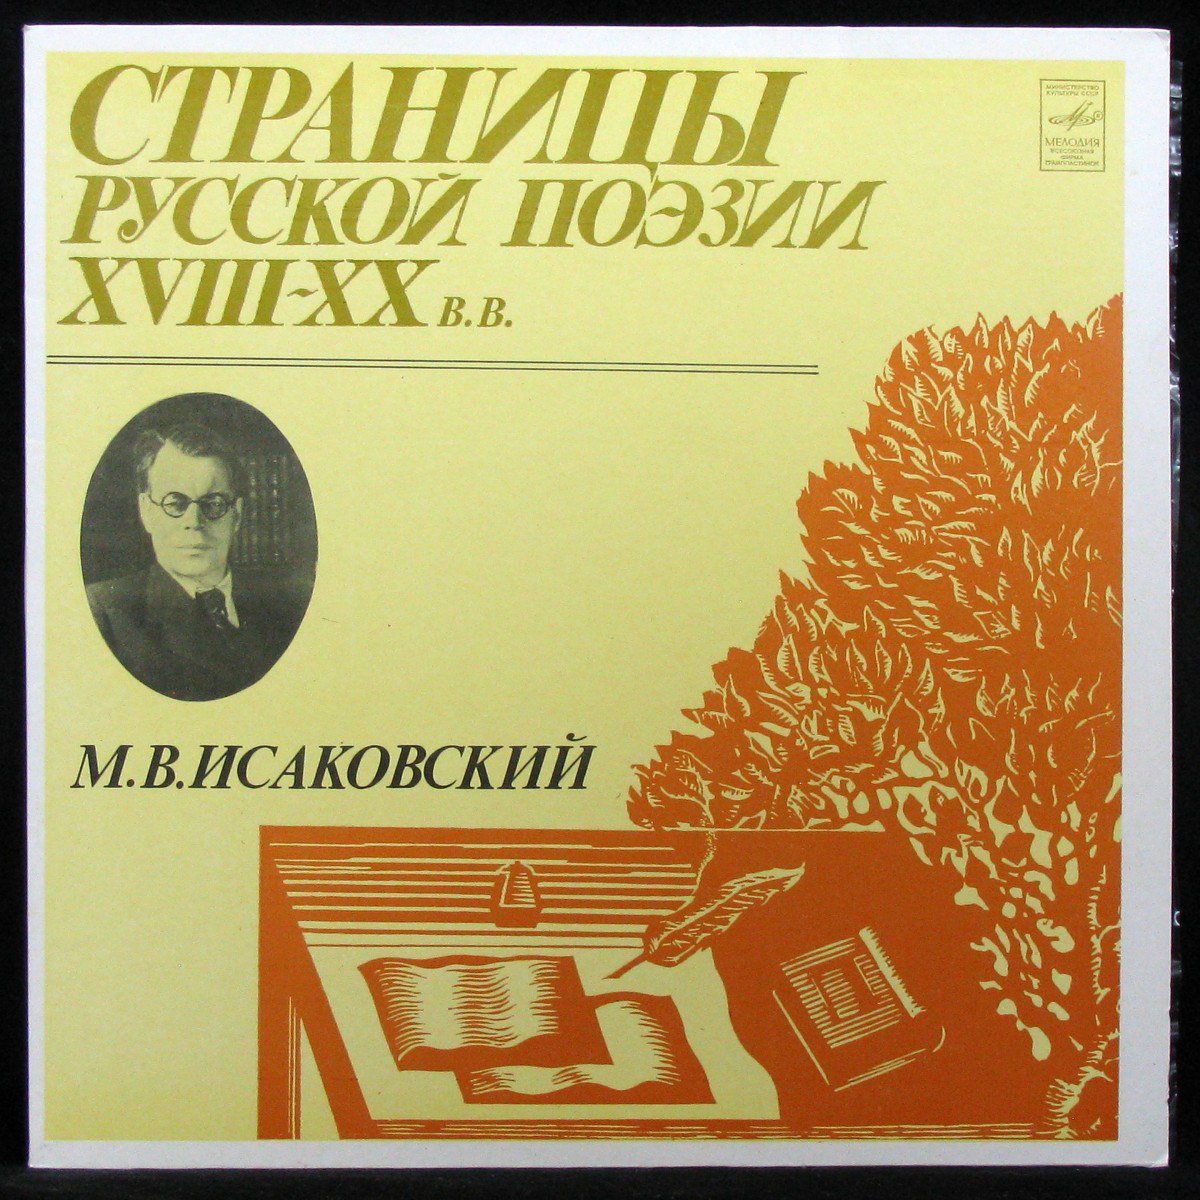 LP V/A — Исаковский: Страницы Русской Поэзии (mono) фото